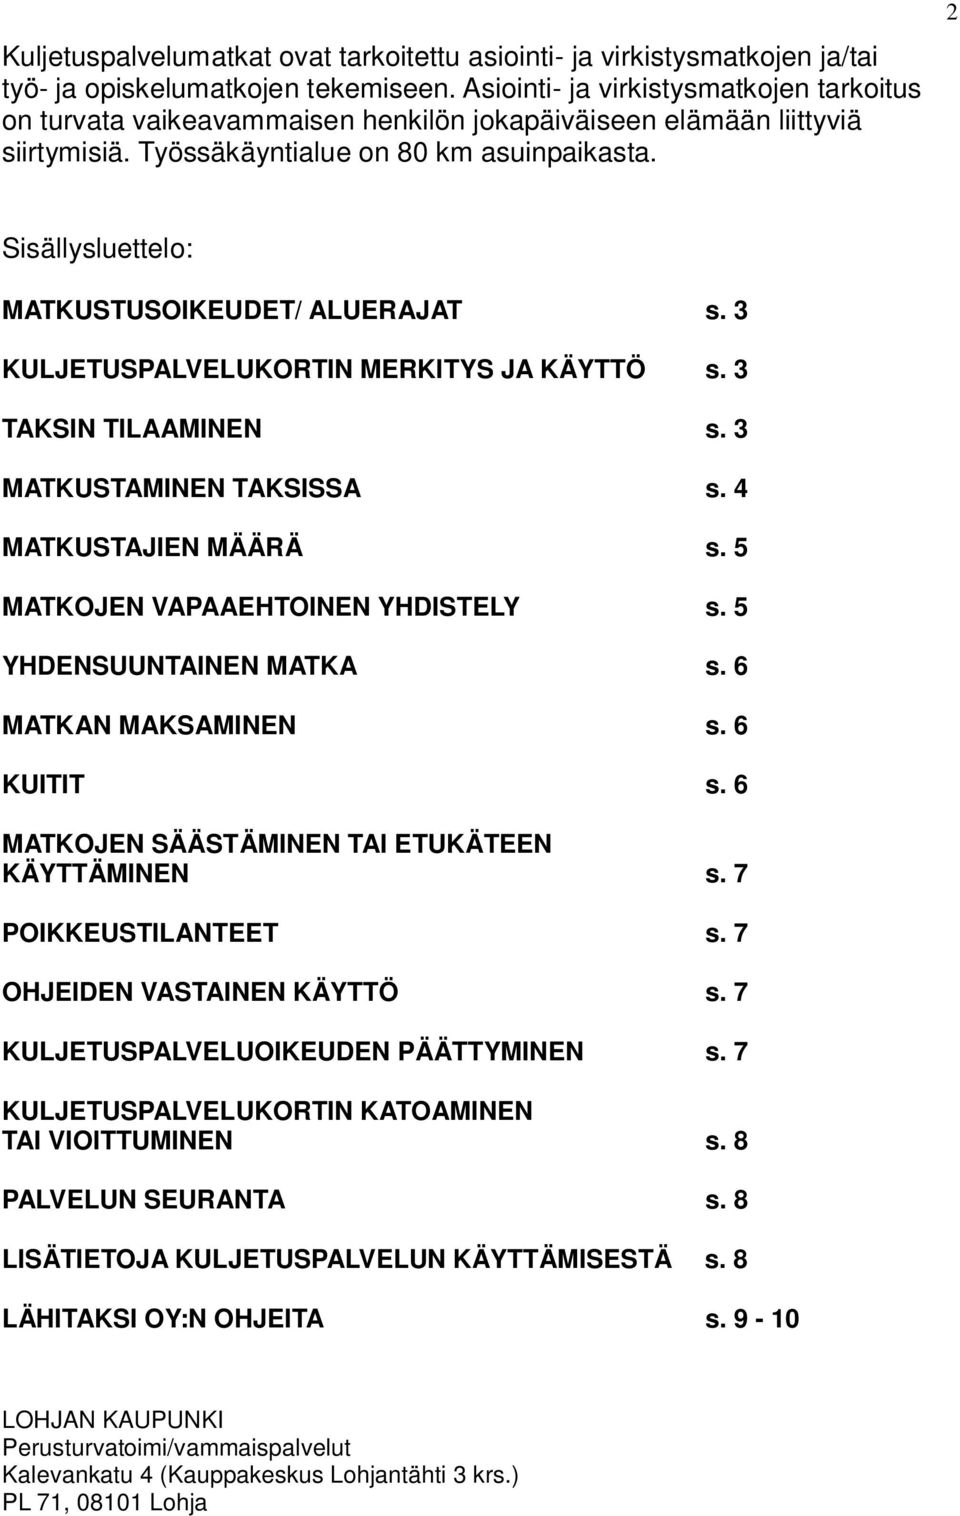 2 Sisällysluettelo: MATKUSTUSOIKEUDET/ ALUERAJAT s. 3 KULJETUSPALVELUKORTIN MERKITYS JA KÄYTTÖ s. 3 TAKSIN TILAAMINEN s. 3 MATKUSTAMINEN TAKSISSA s. 4 MATKUSTAJIEN MÄÄRÄ s.